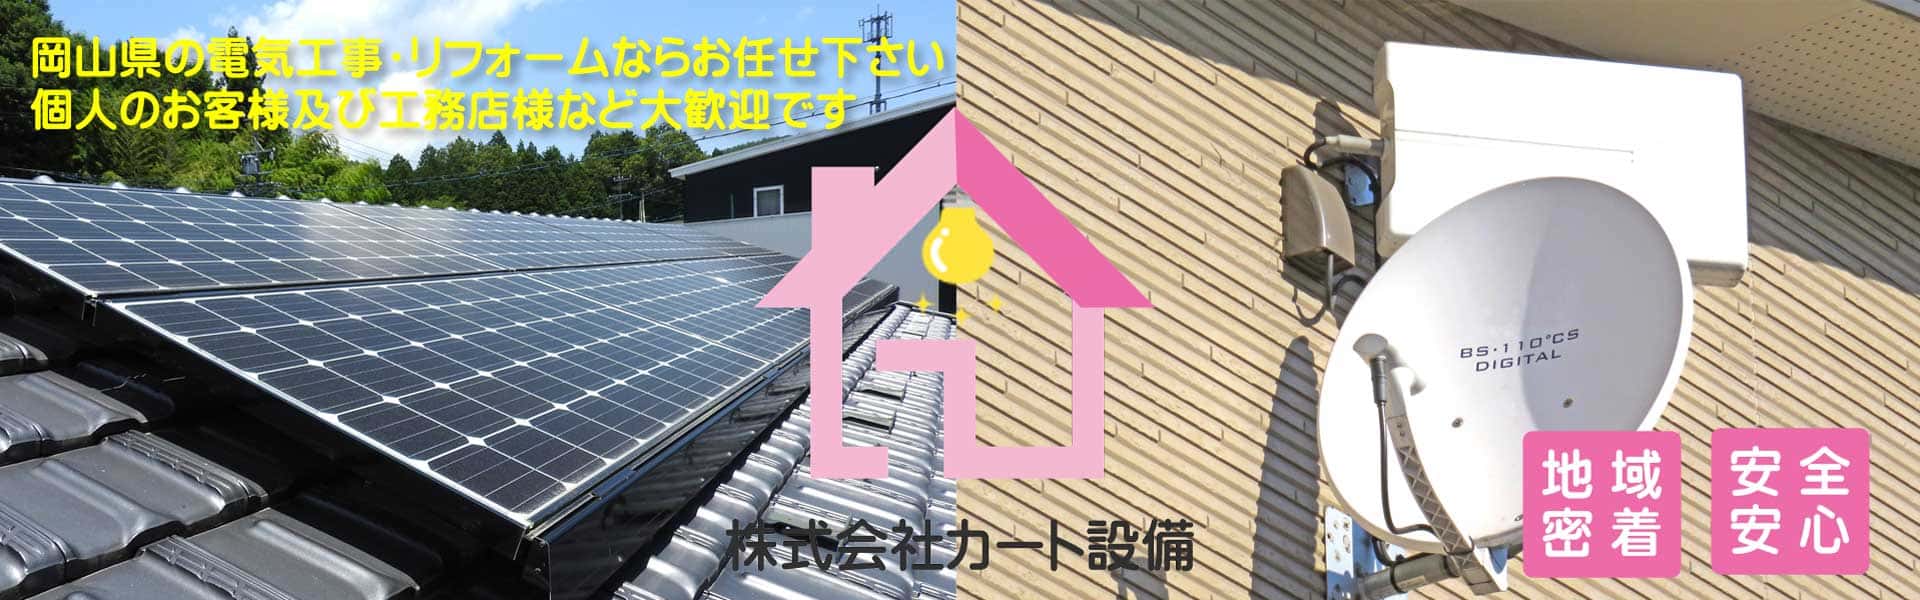 株式会社カート設備の太陽光設備イメージ